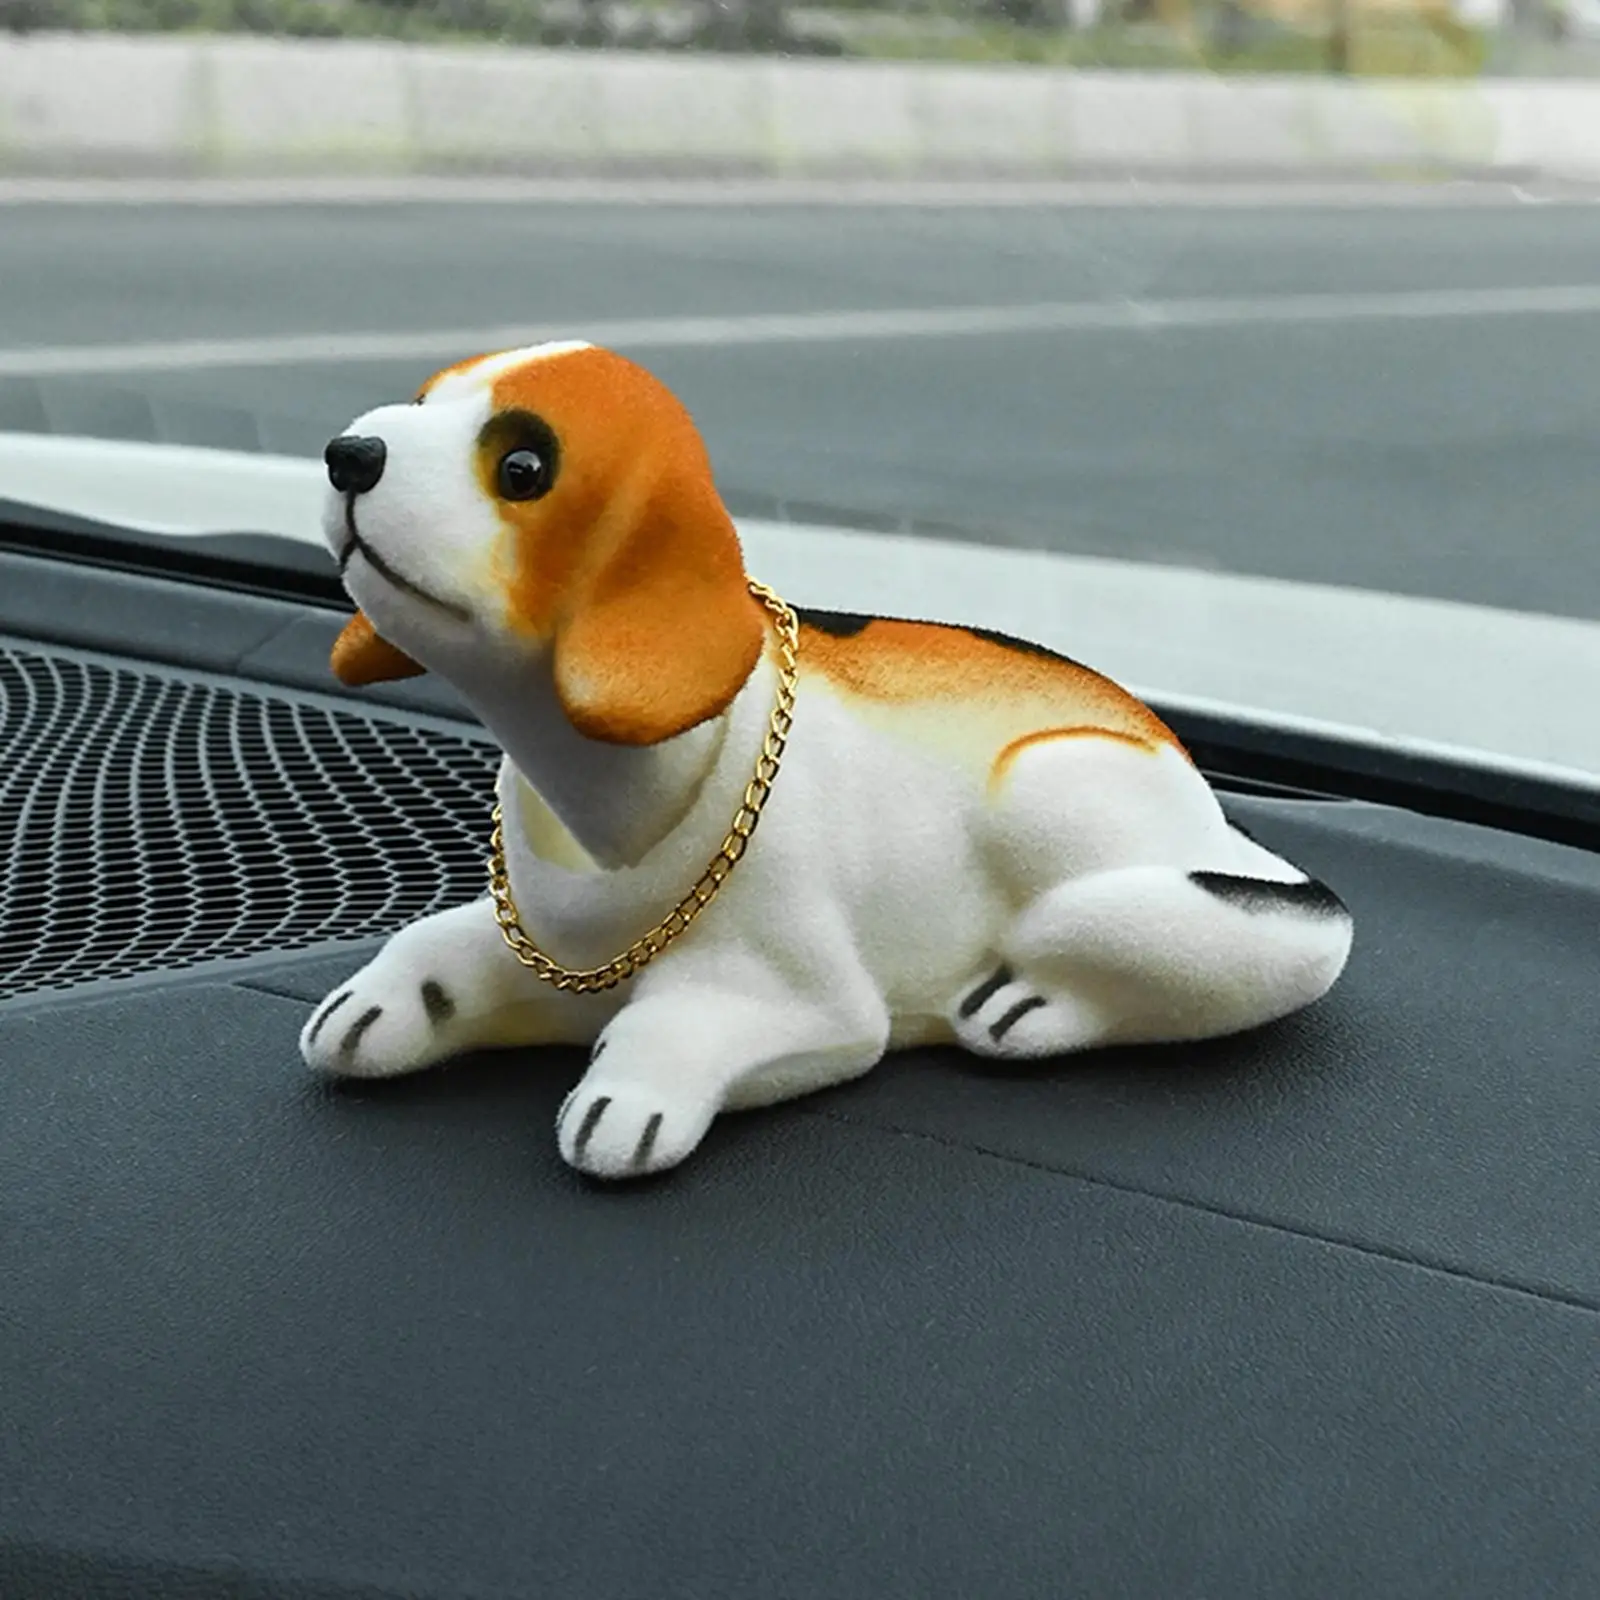 Cute Bobble Head Dog Nodding Dog Puppy for Car Dashboard Ornament Decoration